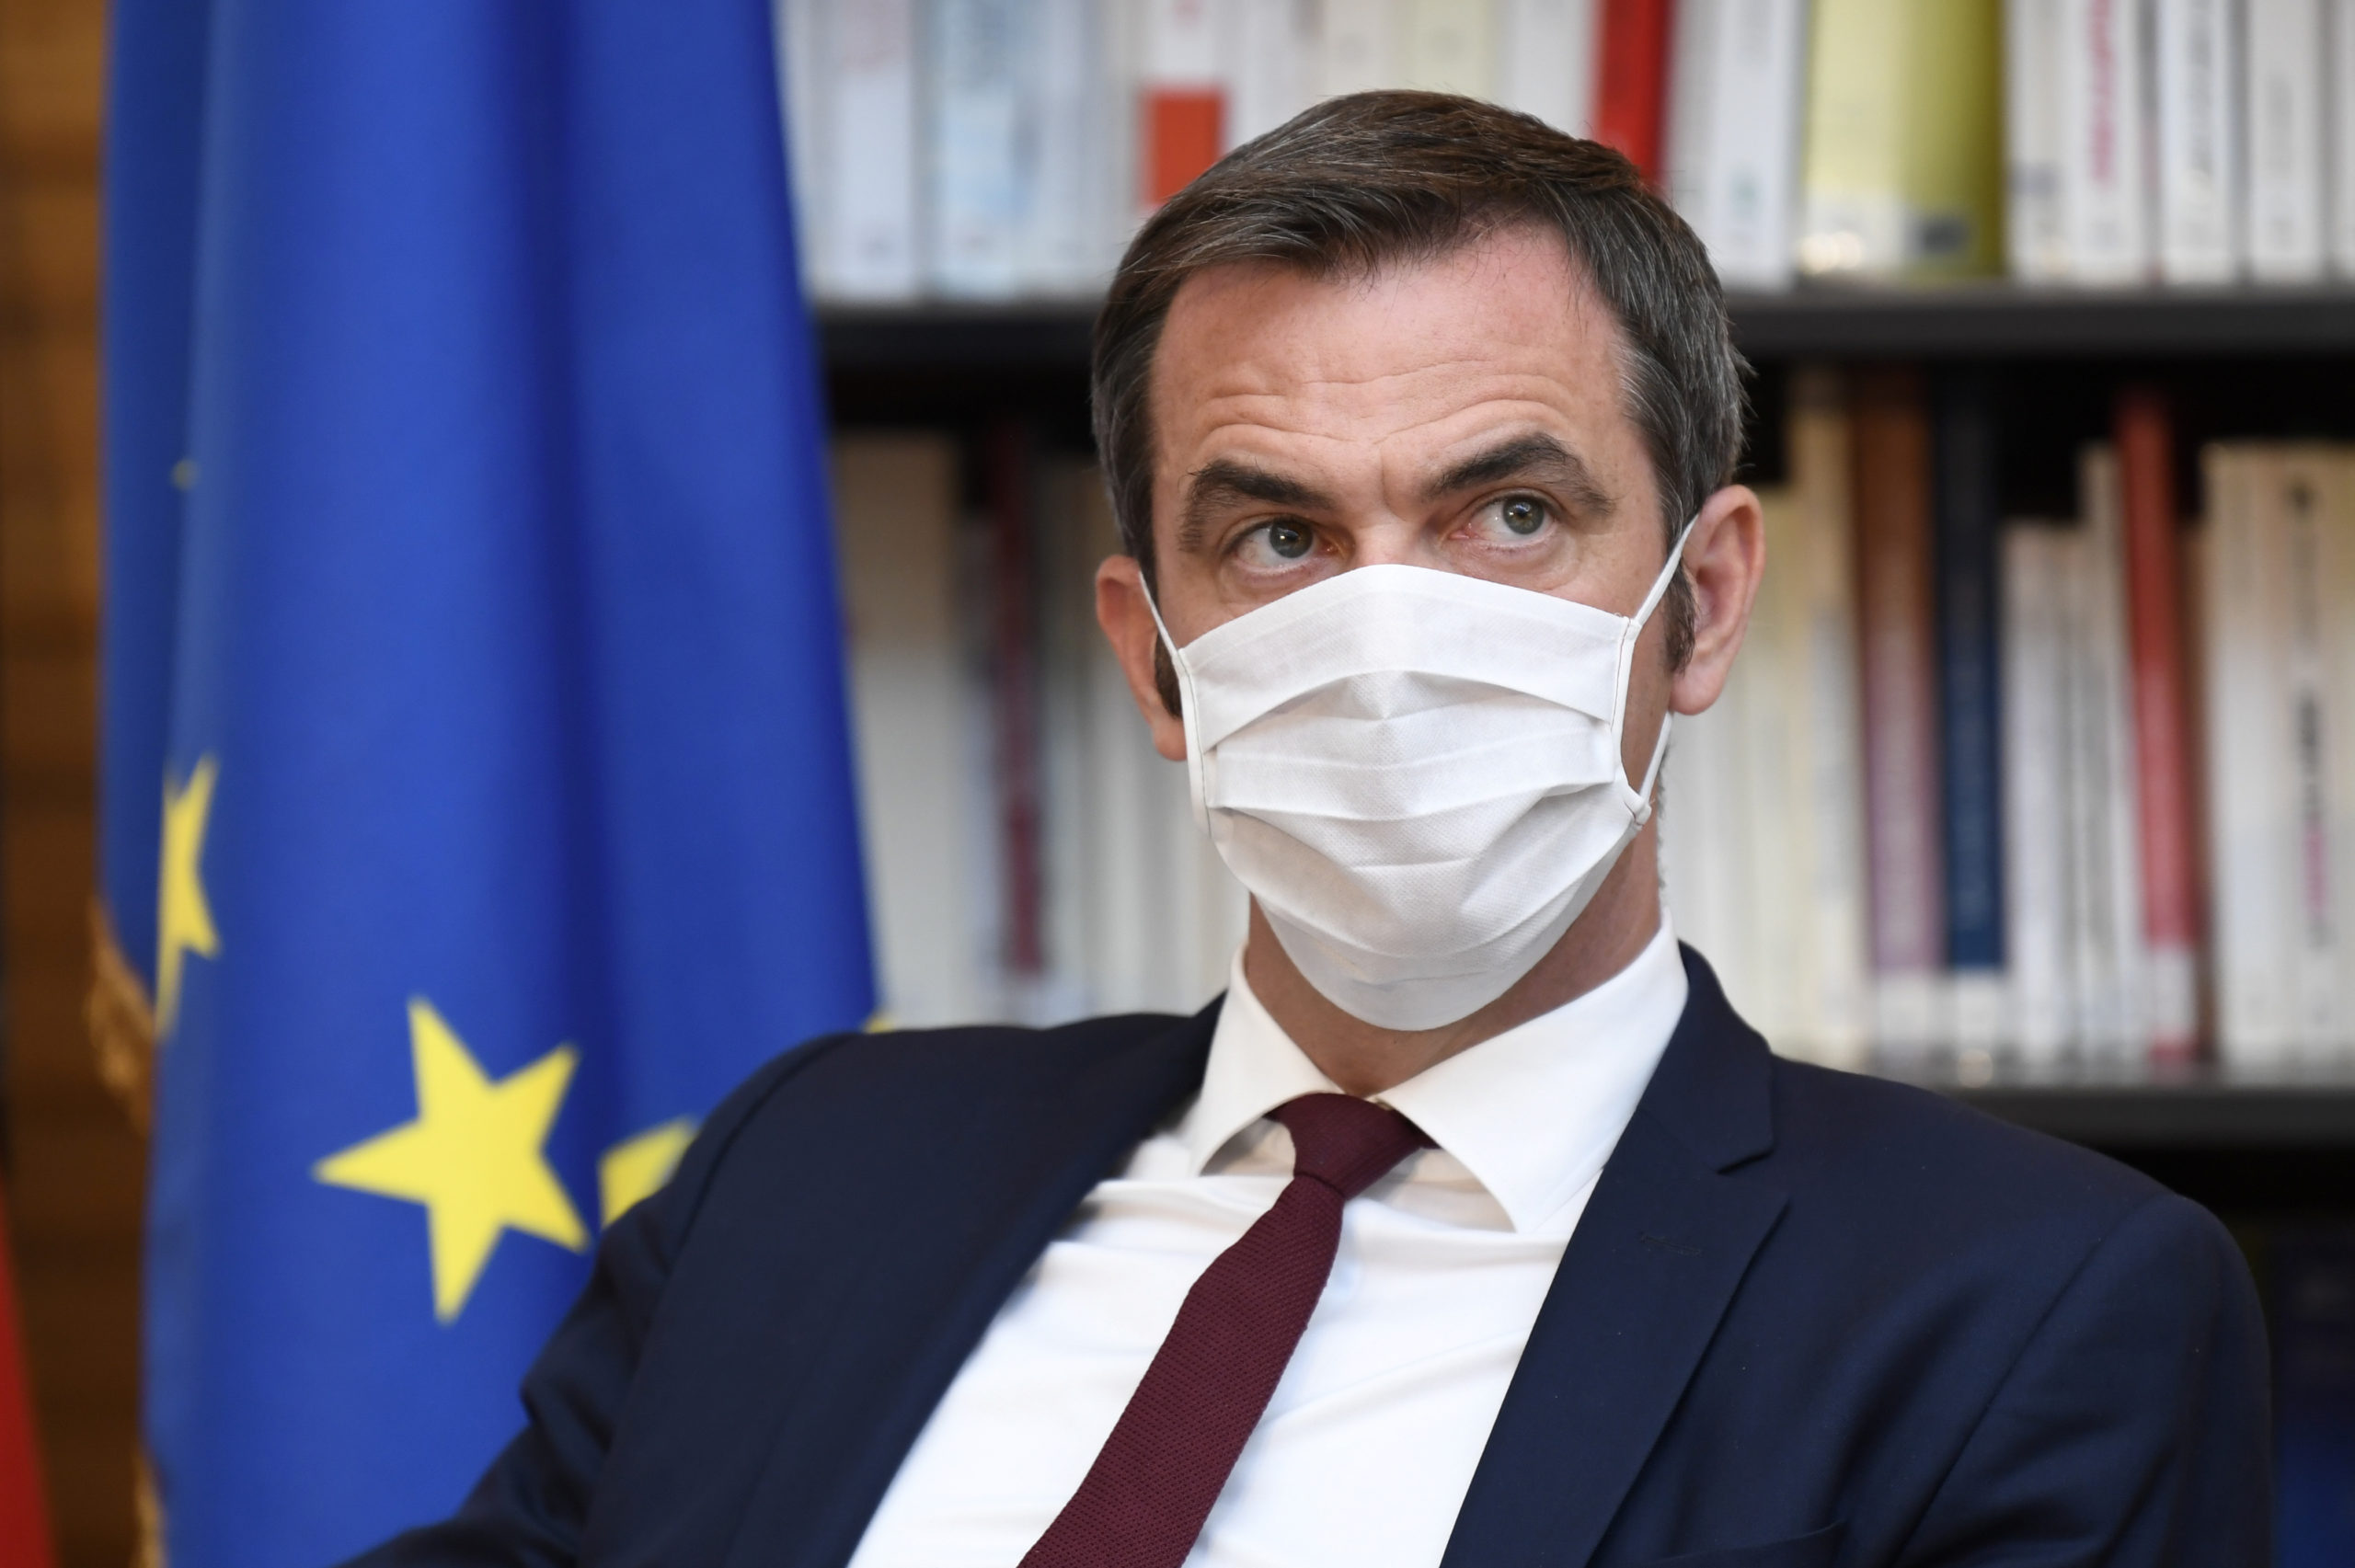 France: Le port du masque pourra être rendu obligatoire dans les lieux publics ouverts, dit Véran